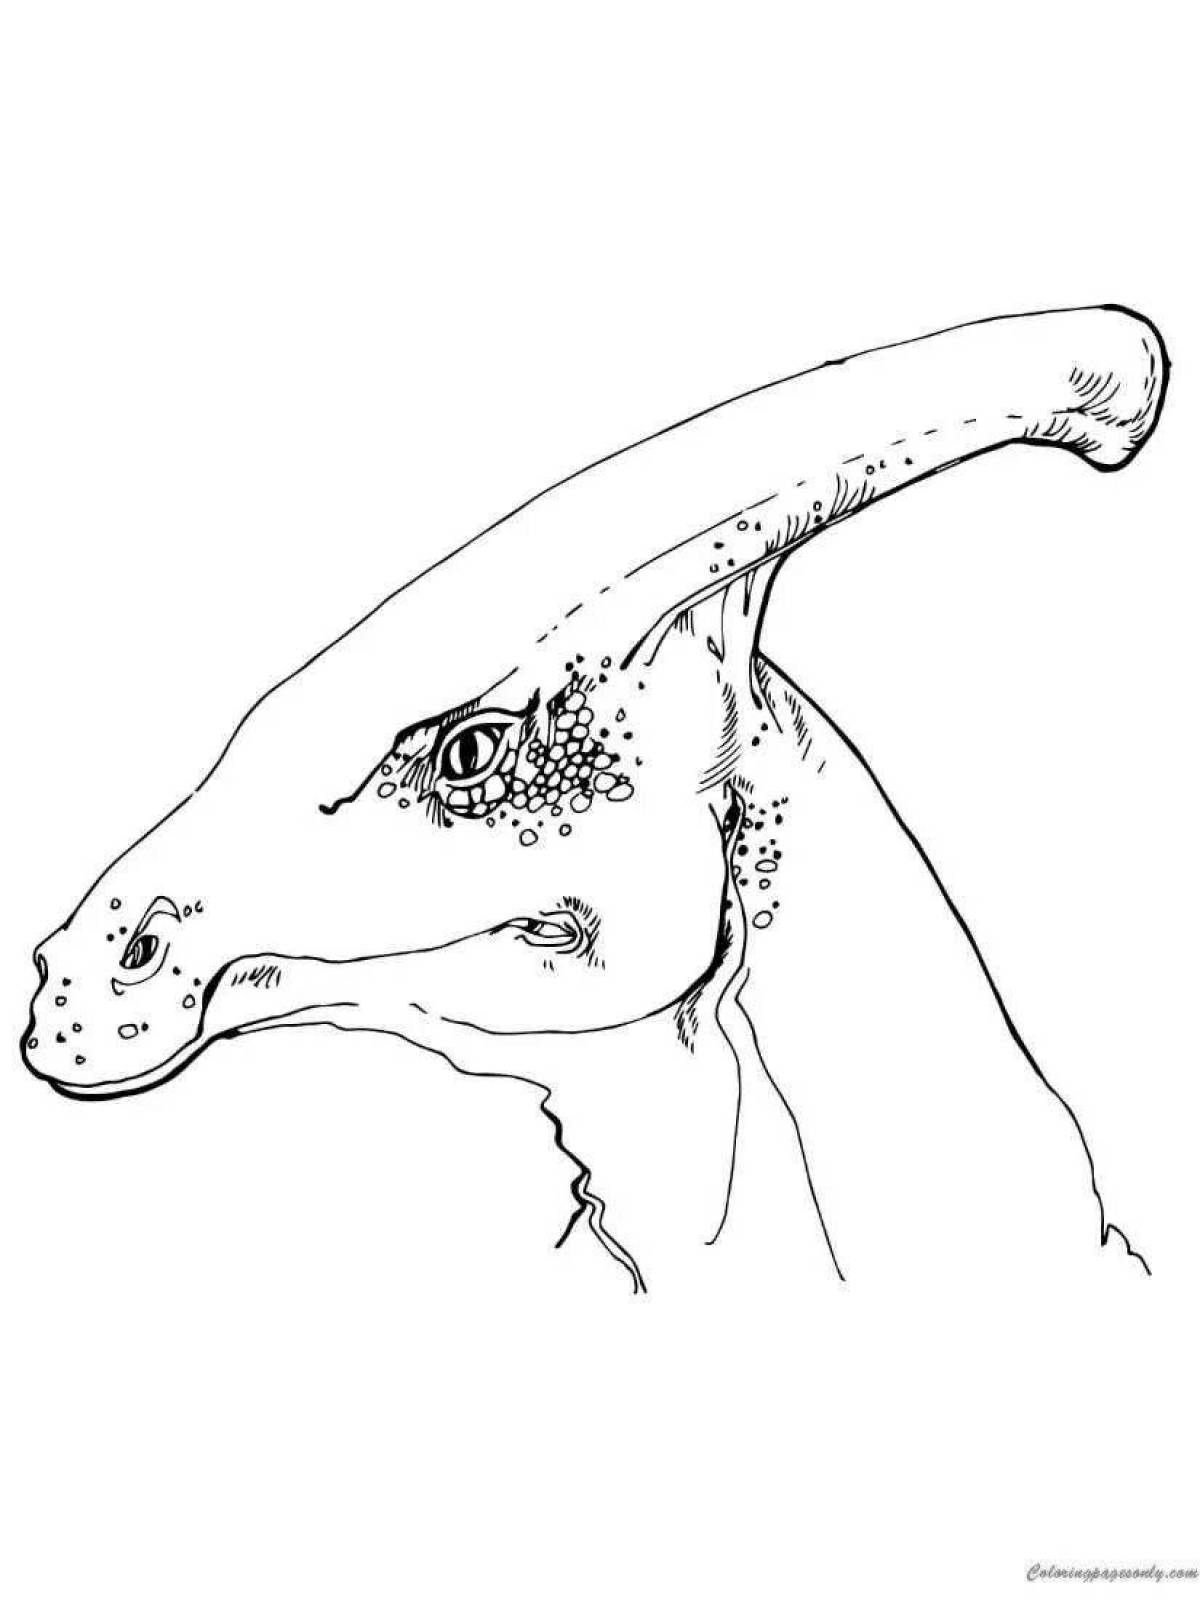 Гламурная раскраска динозавр паразауролоф